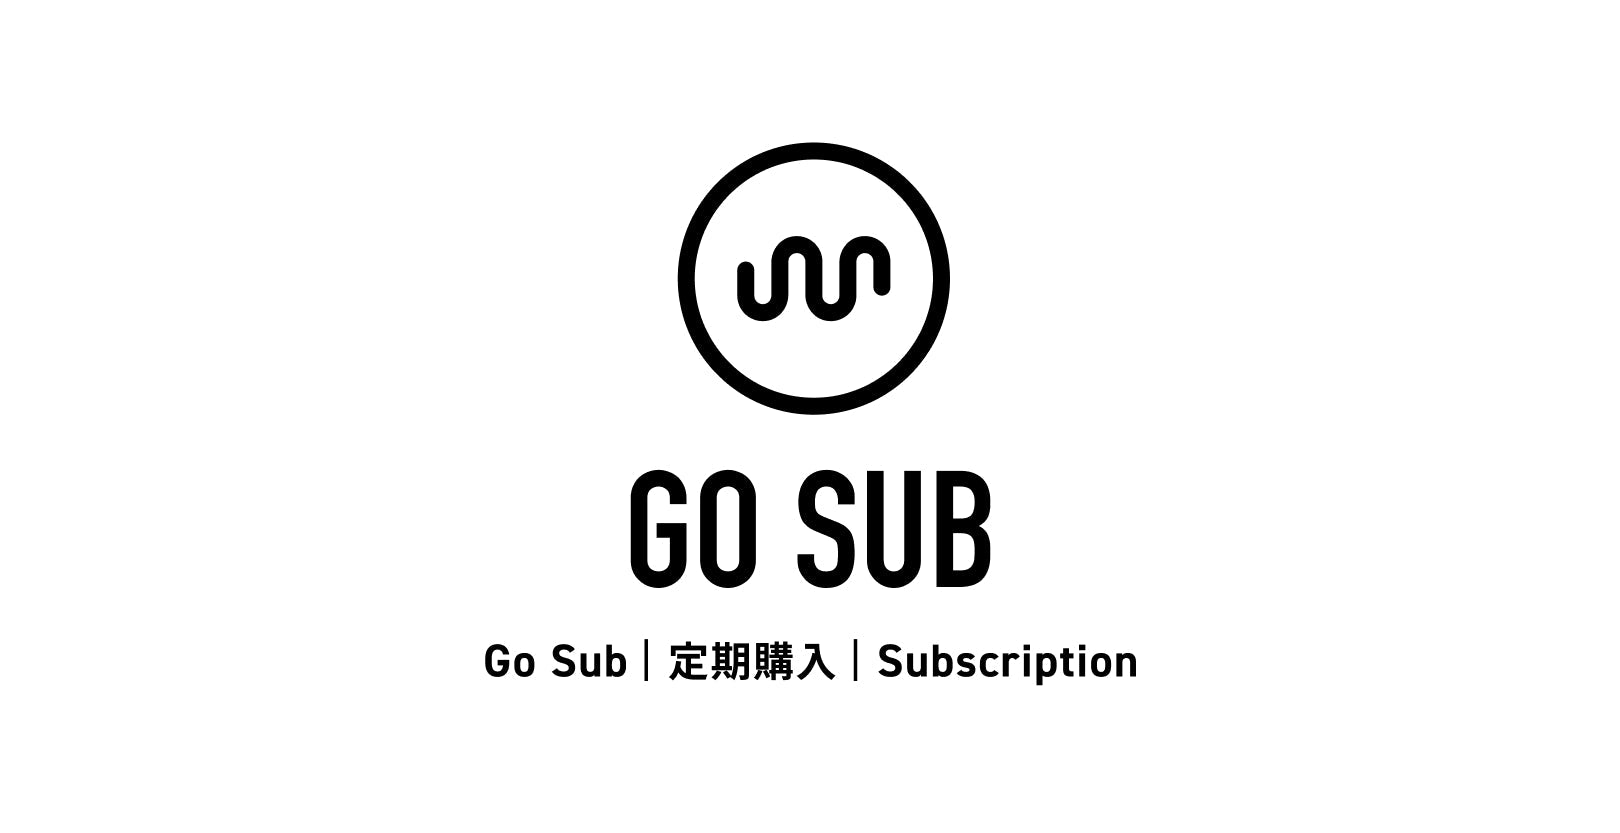 株式会社Tsun様のブログに『Go Sub | 定期購入 | Subscription』が掲載されました！